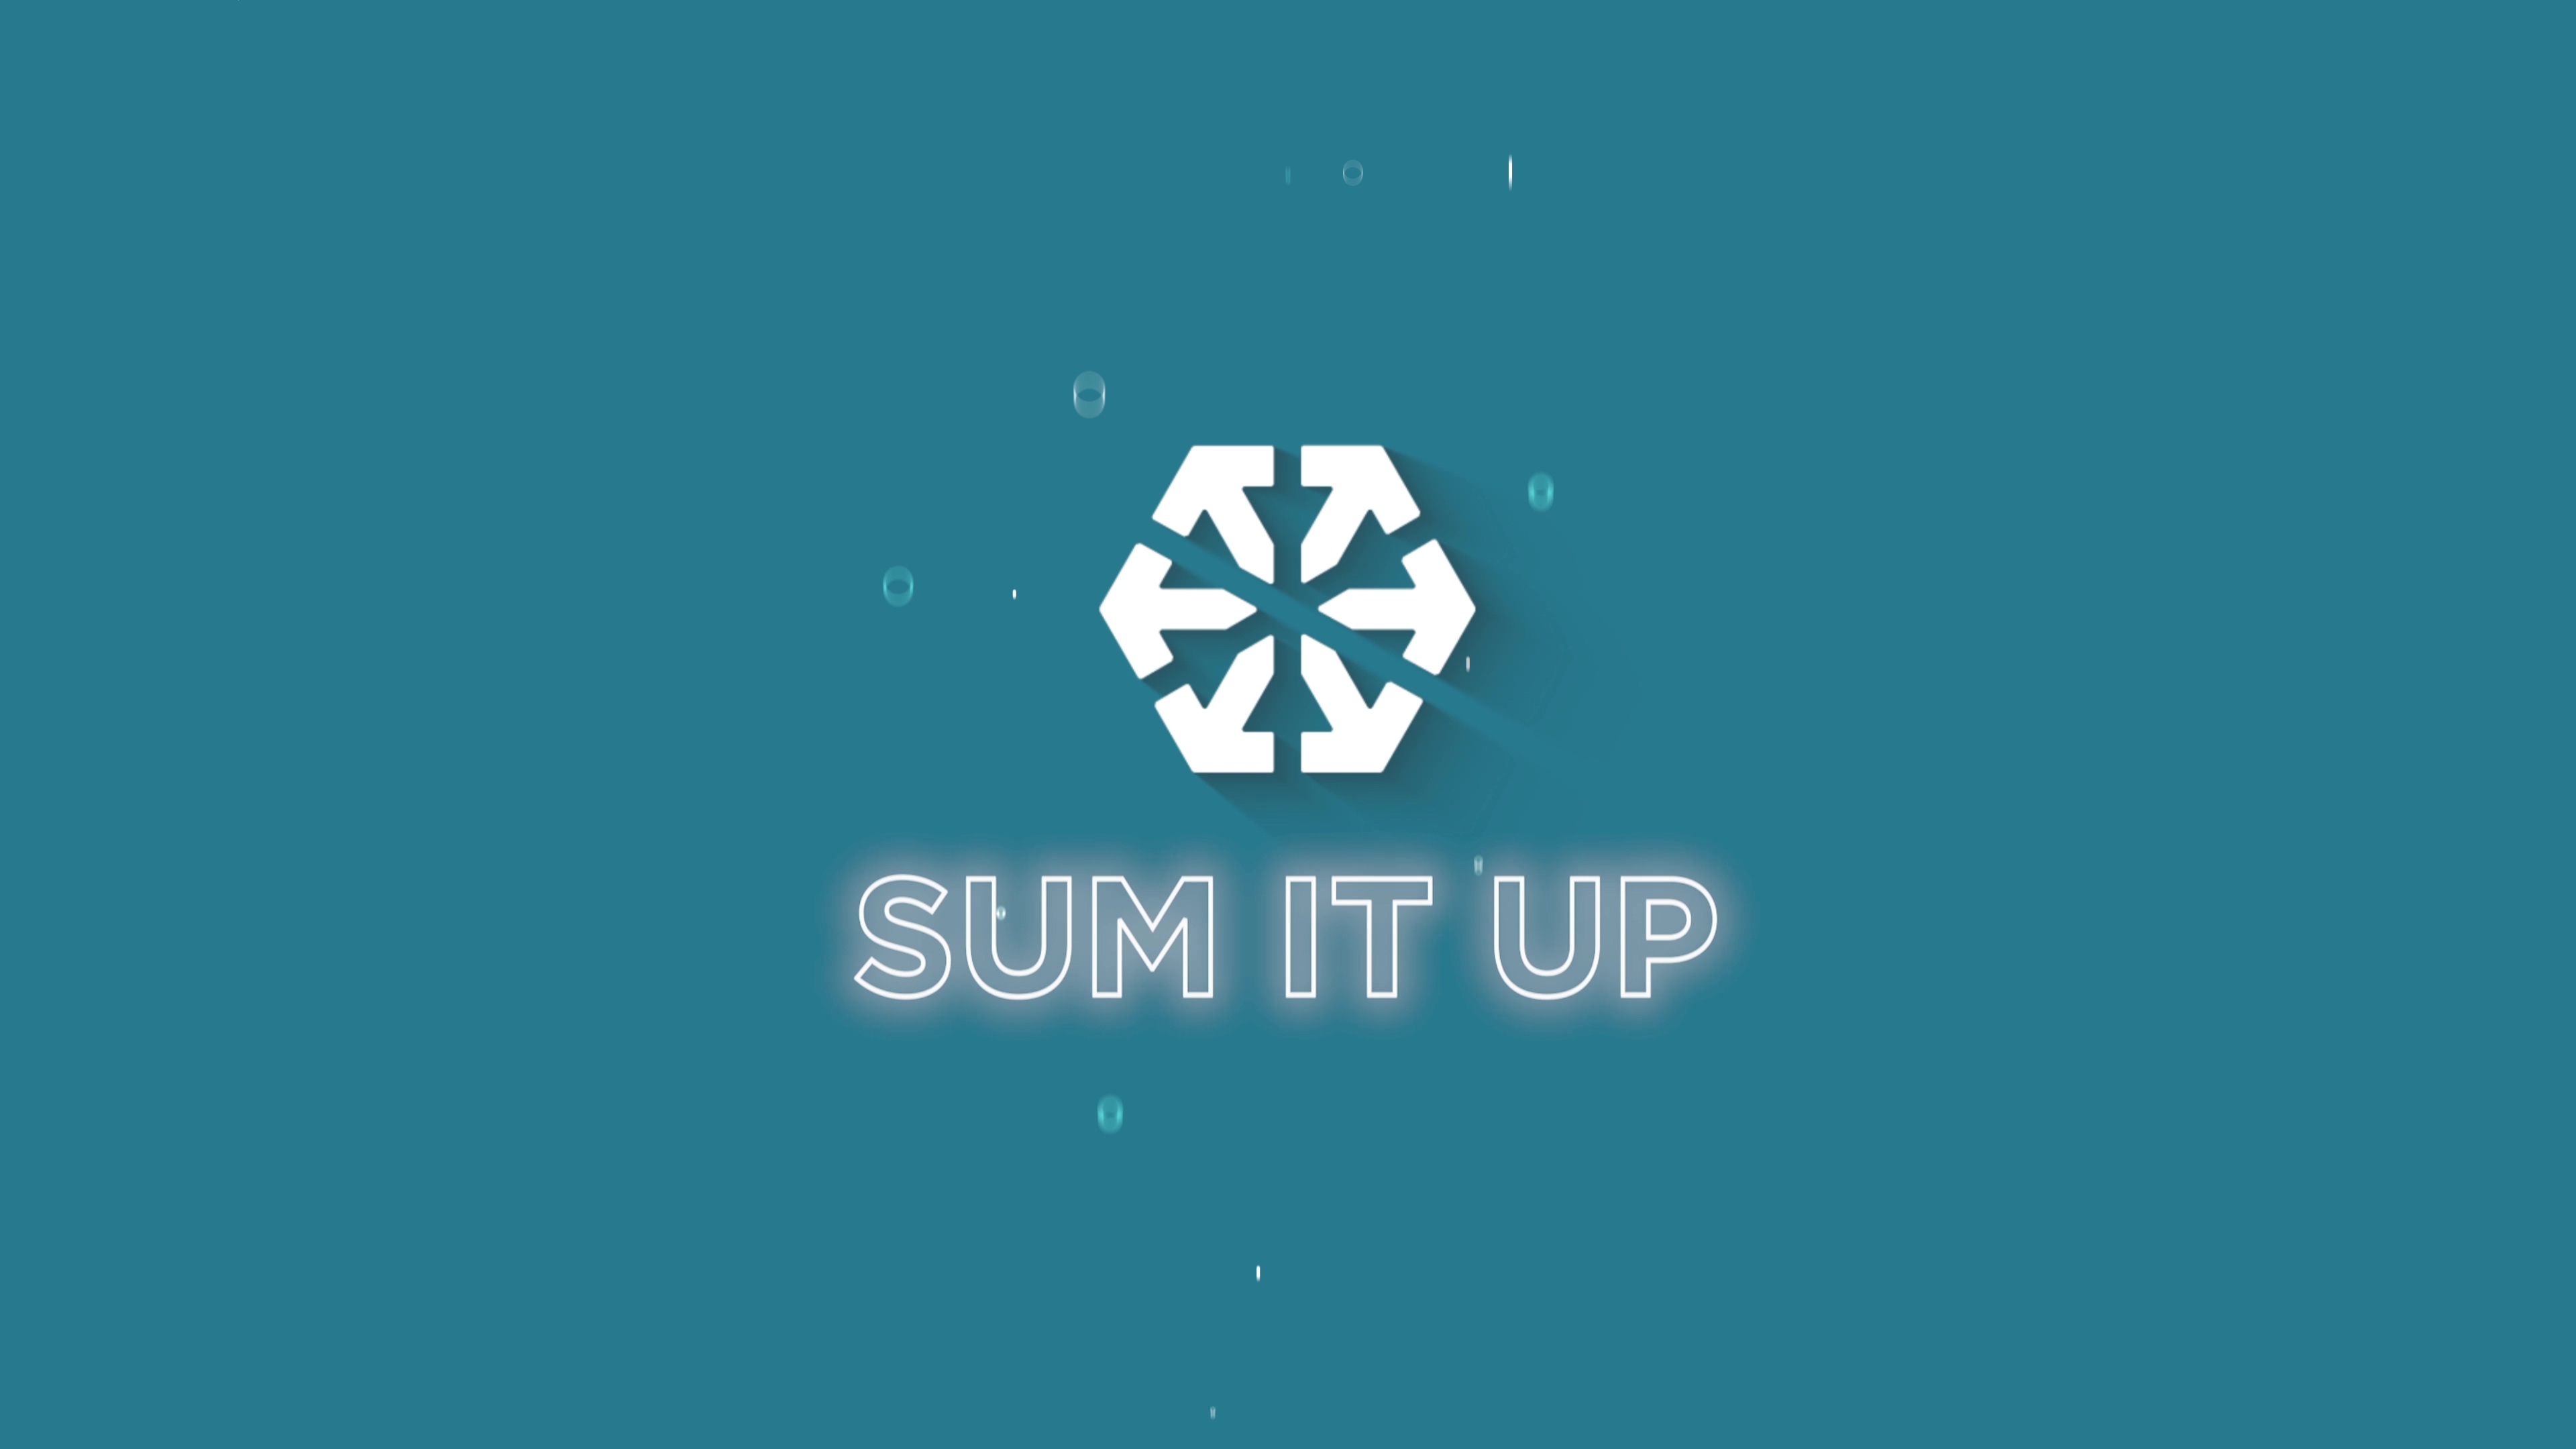 Sum It Up! Episode 2